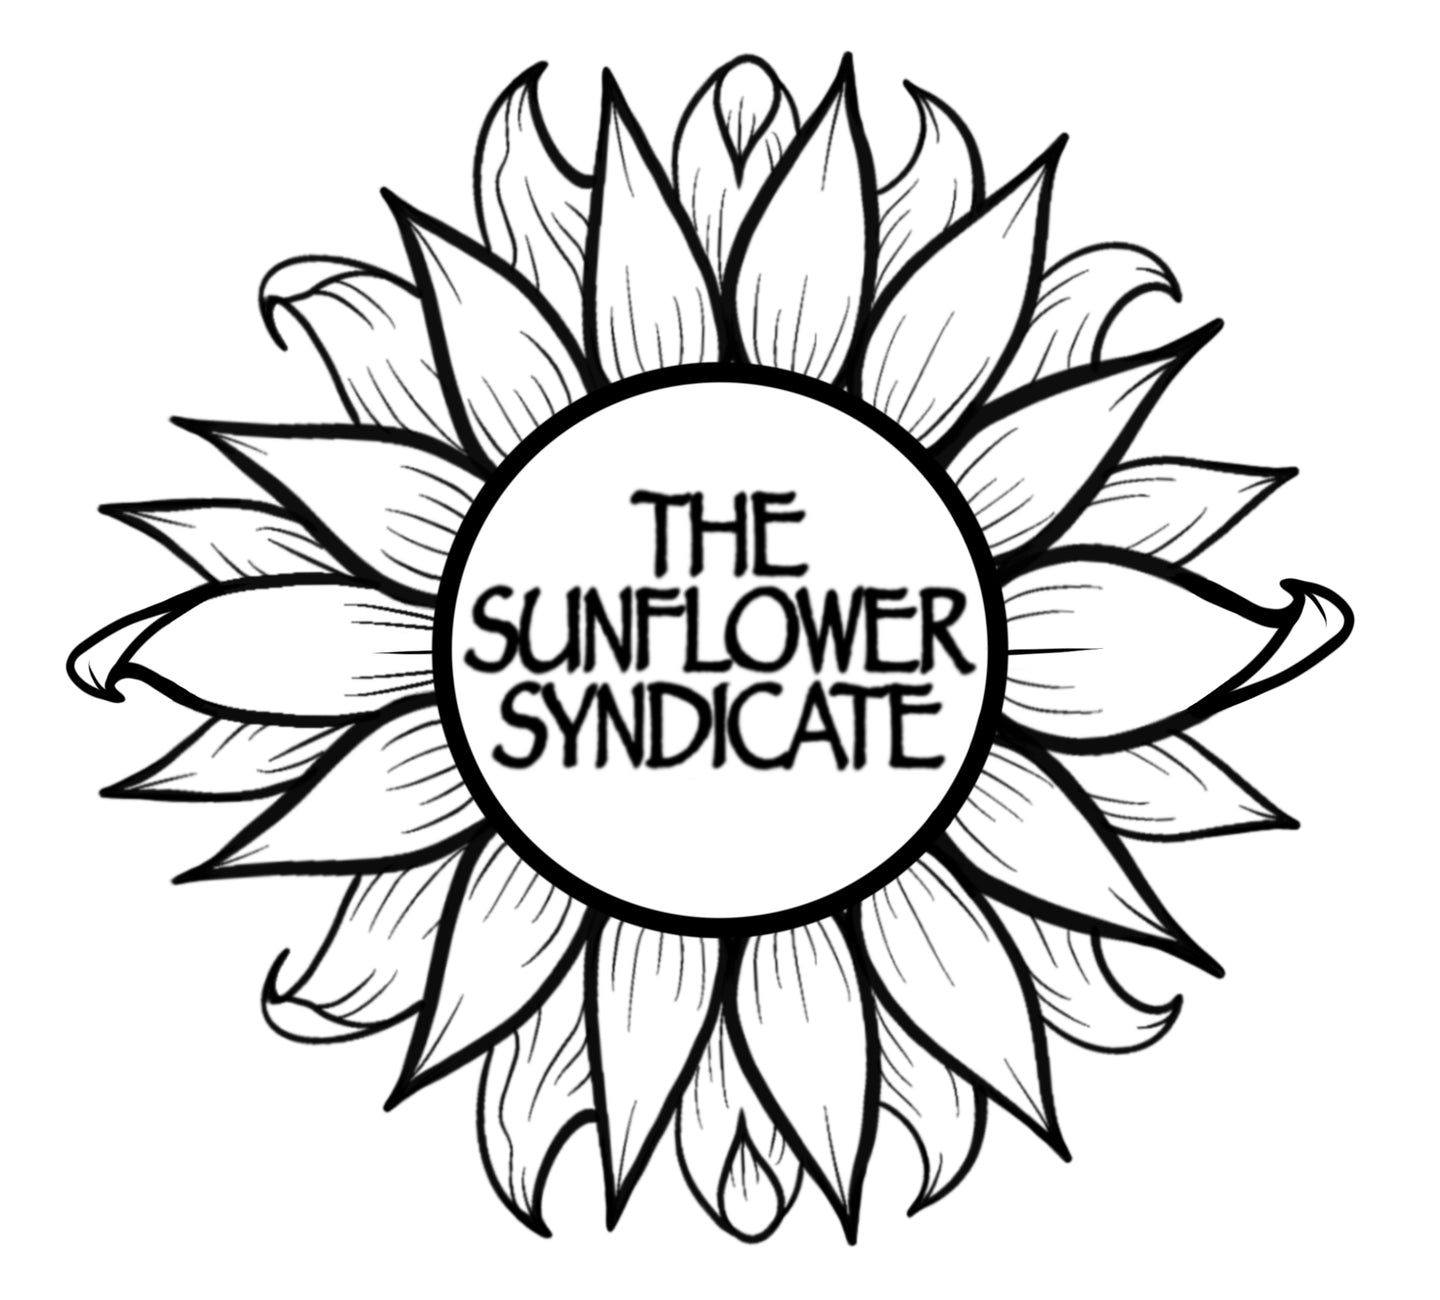 Jalen Ginn at The Sunflower Syndicate